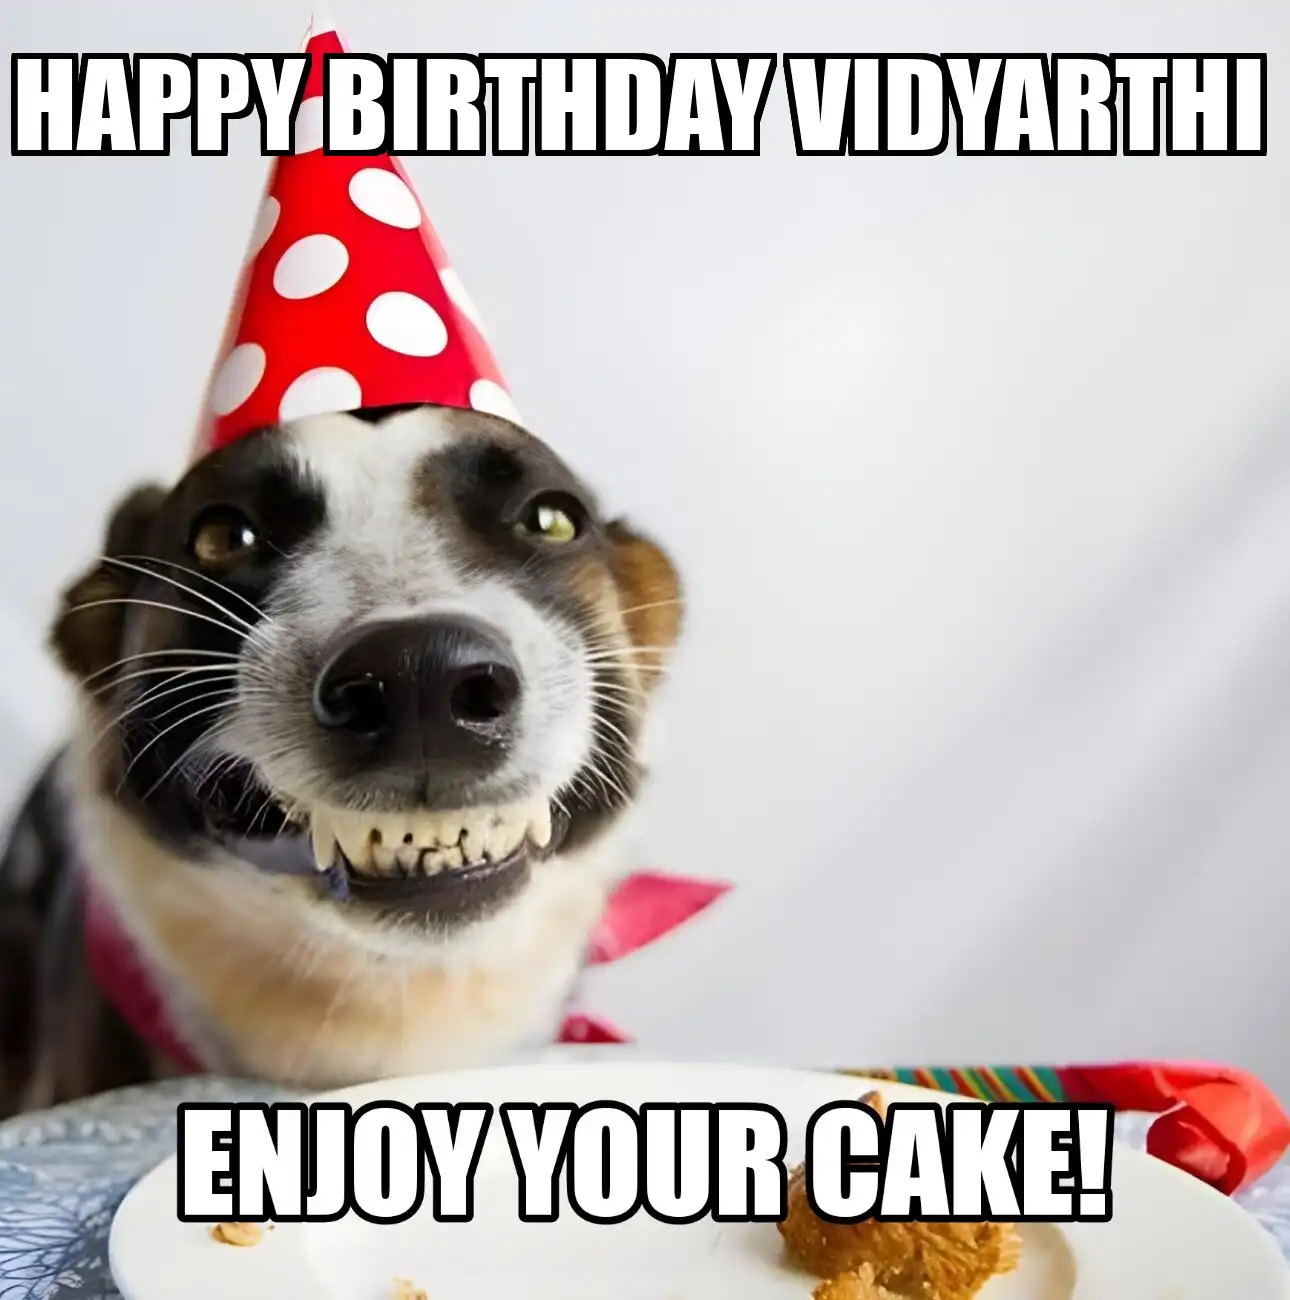 Happy Birthday Vidyarthi Enjoy Your Cake Dog Meme